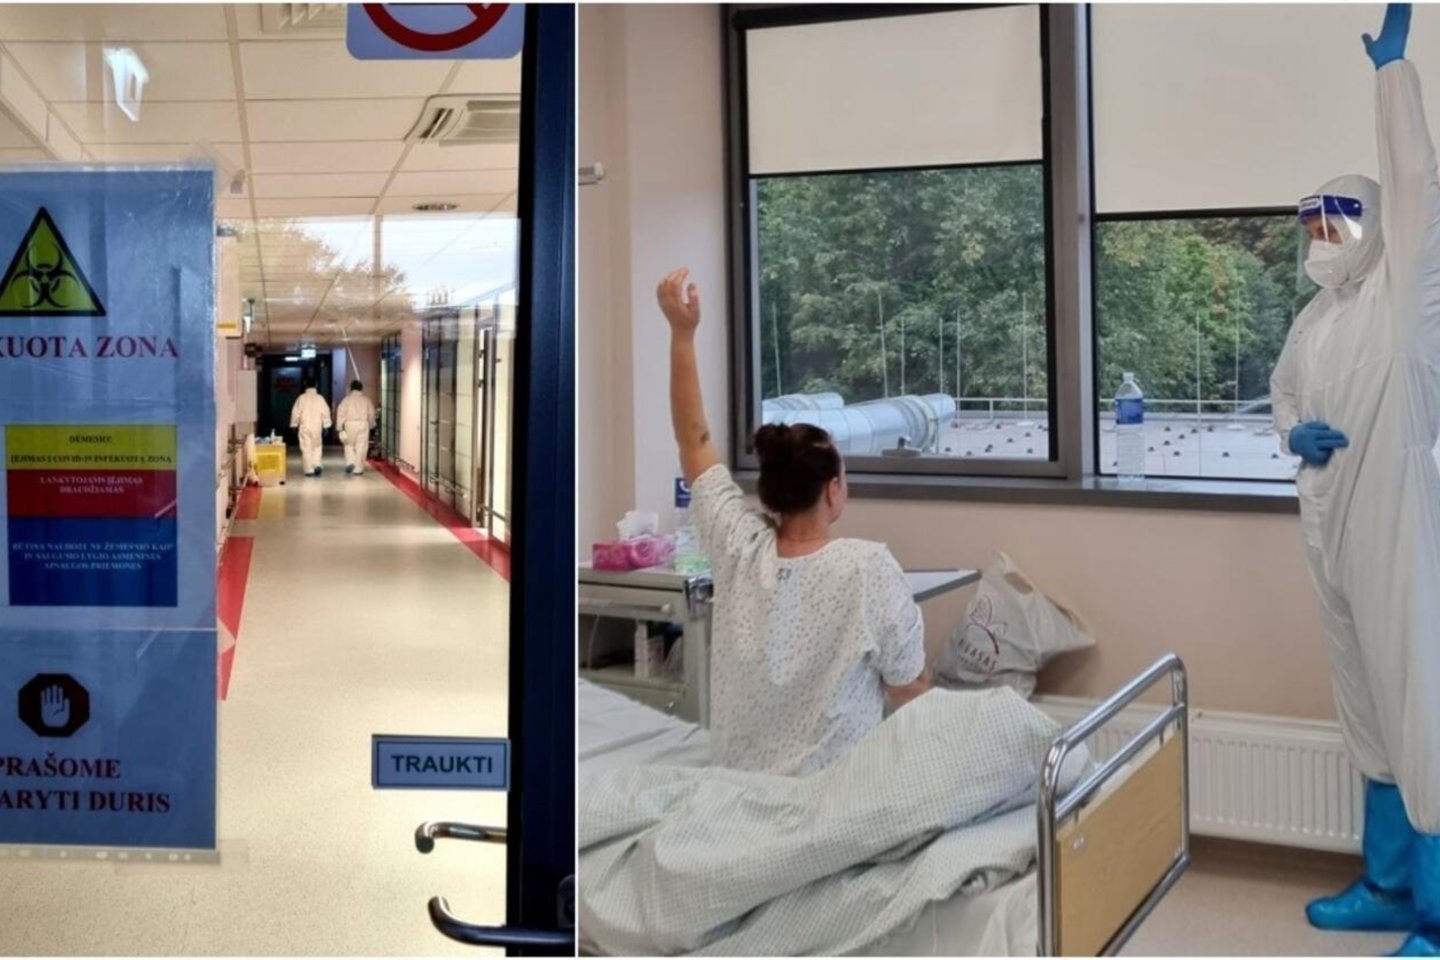 Į reanimacijos skyrių patekę pacientai dažnai nepamena medikų, kurie juos gydė.<br>Respublikinės Klaipėdos ligoninės nuotr.